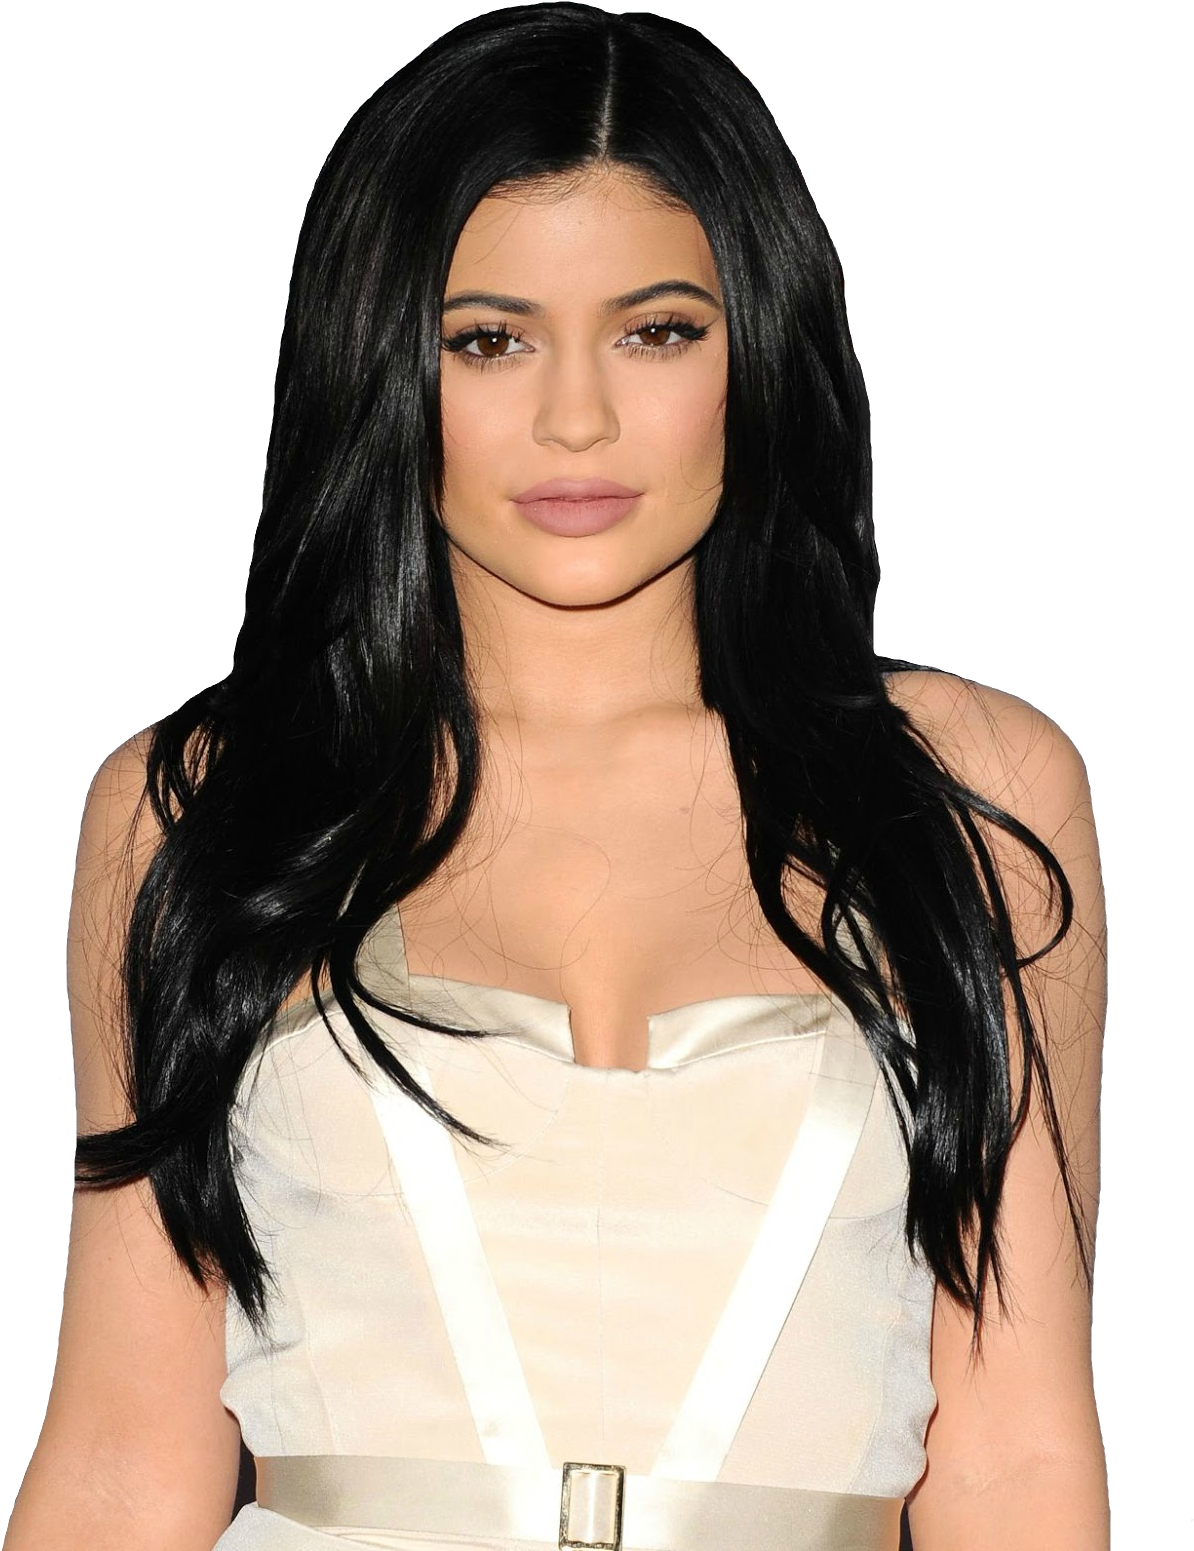 Transparents Kylie Jenner Transparents Like Or Reblog - Kylie Jenner Clipart (1248x1600), Png Download